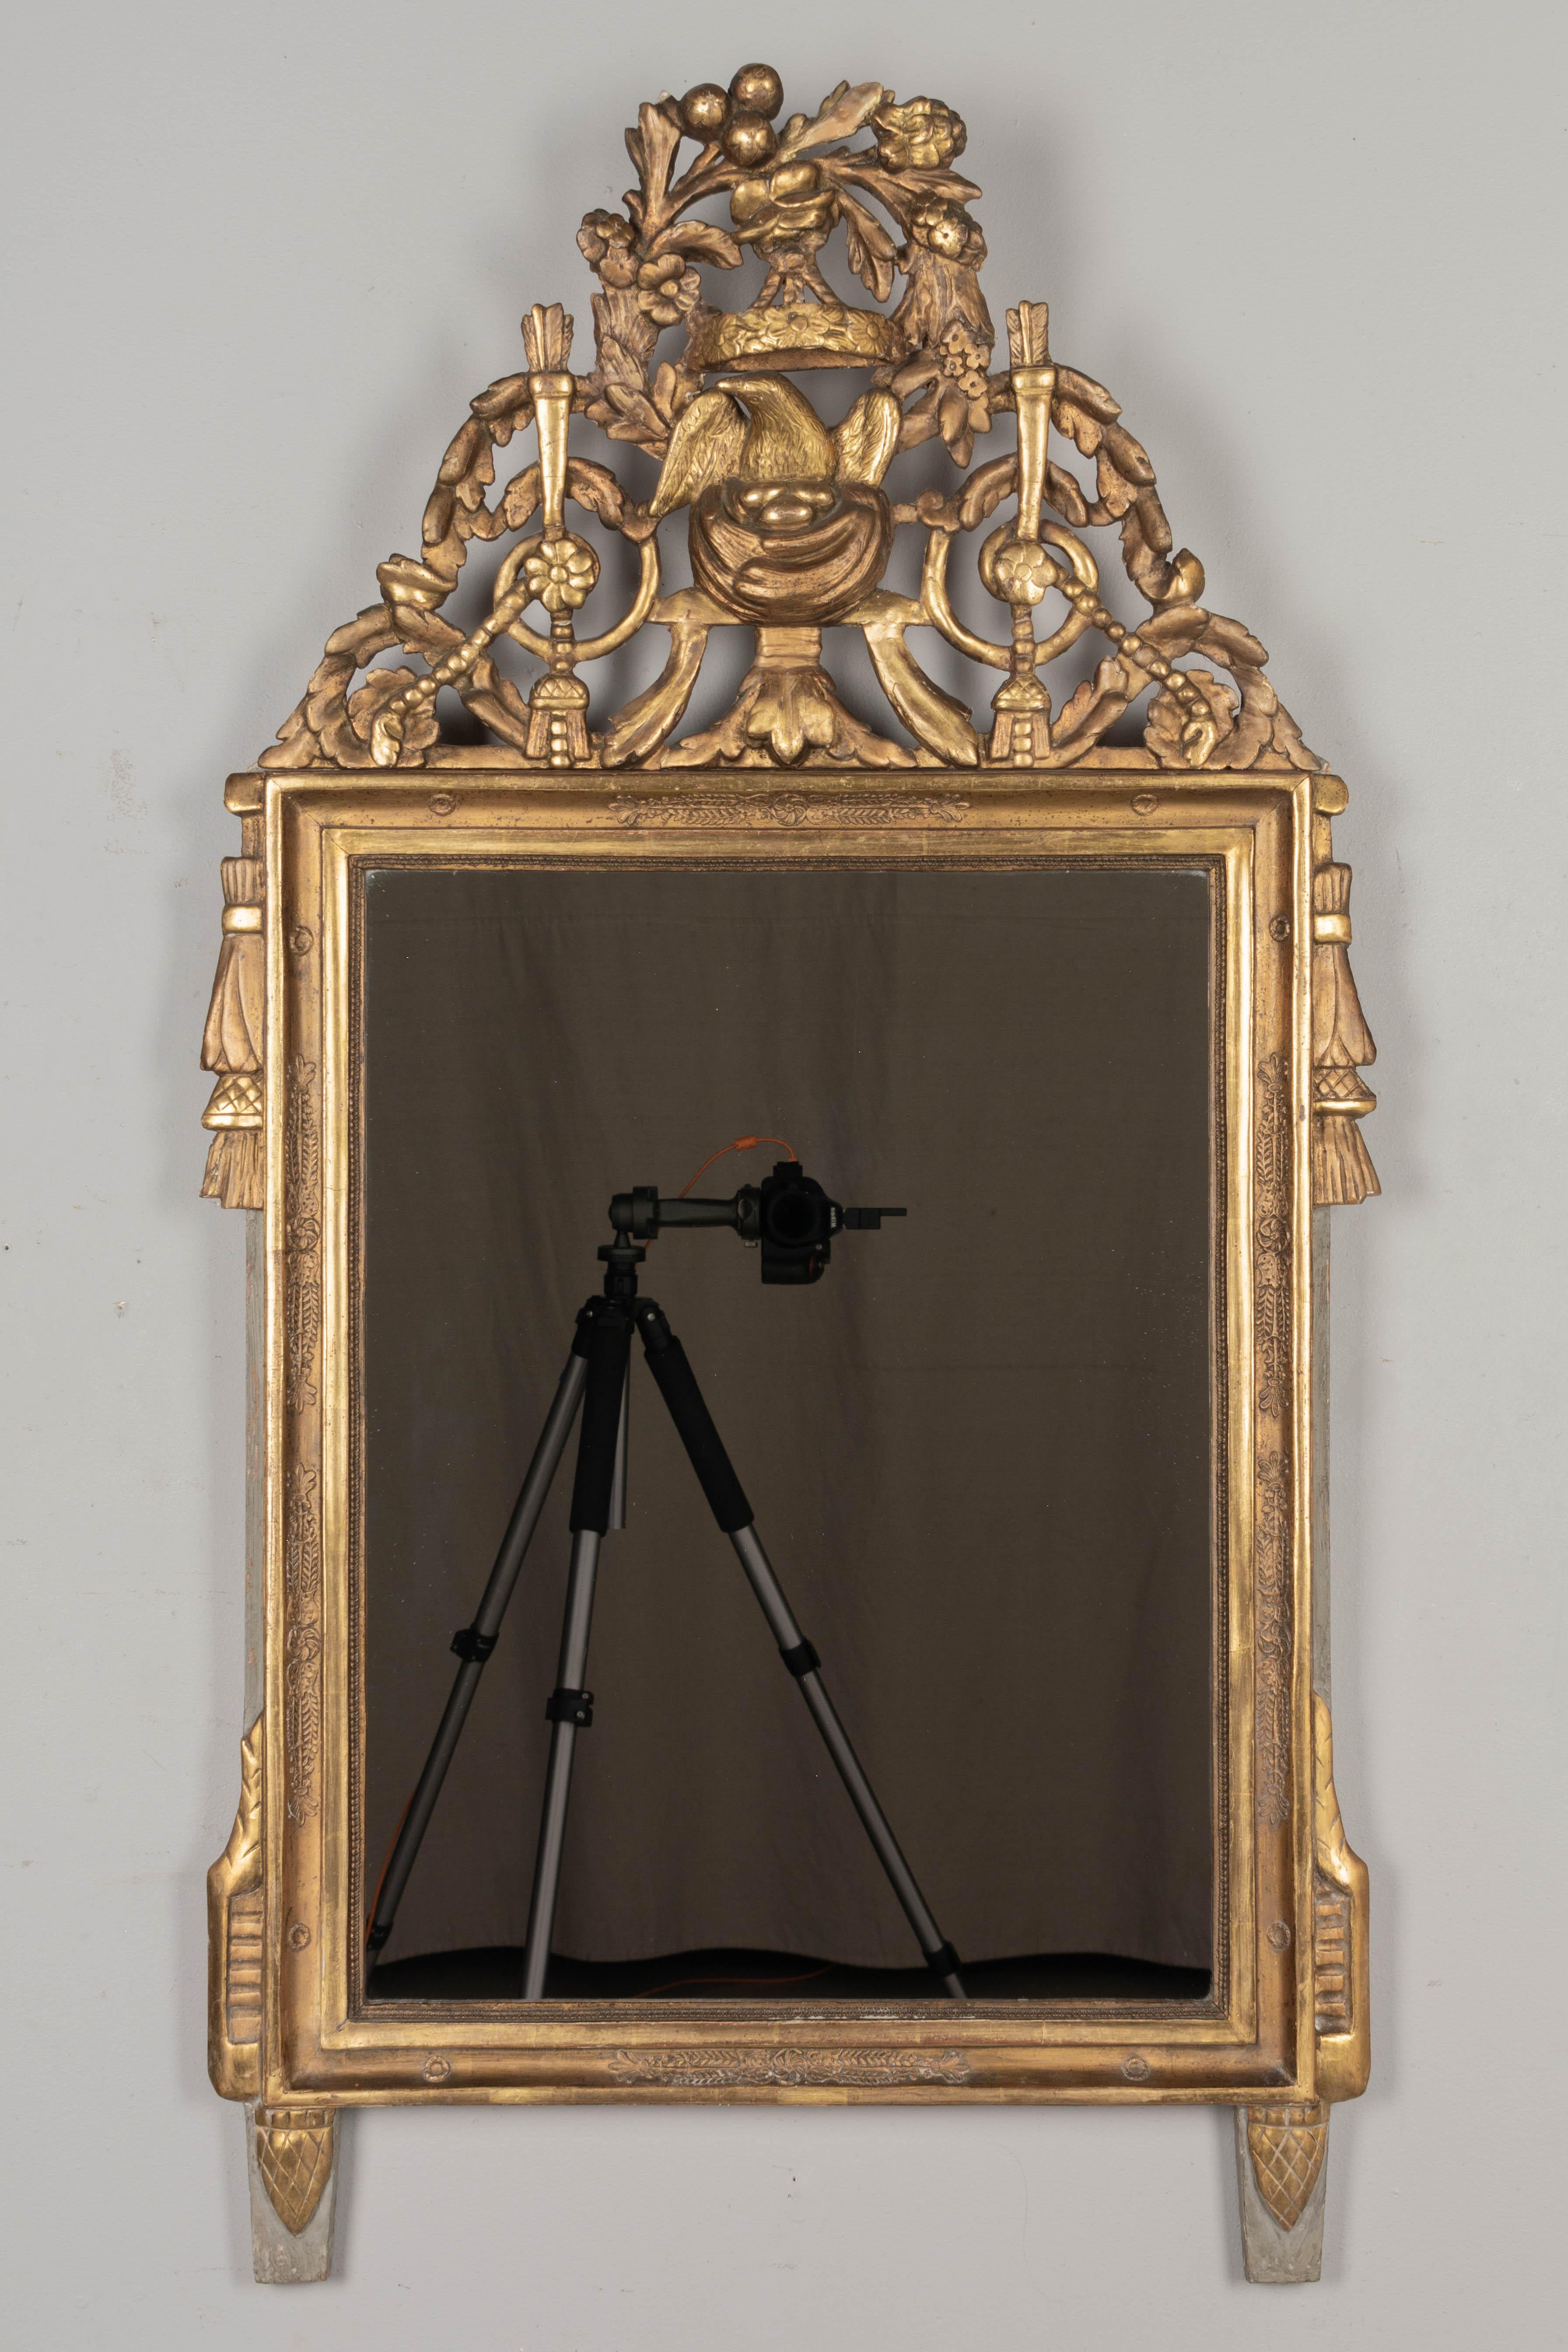 Ein paketvergoldeter Spiegel im Louis-XVI-Stil des späten 18. Jahrhunderts. Aufwändiges, dreidimensional geschnitztes Wappen mit einem Vogelnest unter einem von Girlanden umgebenen Blumenkranzdach. Wunderschön detailliert. Außenrand und Füße mit